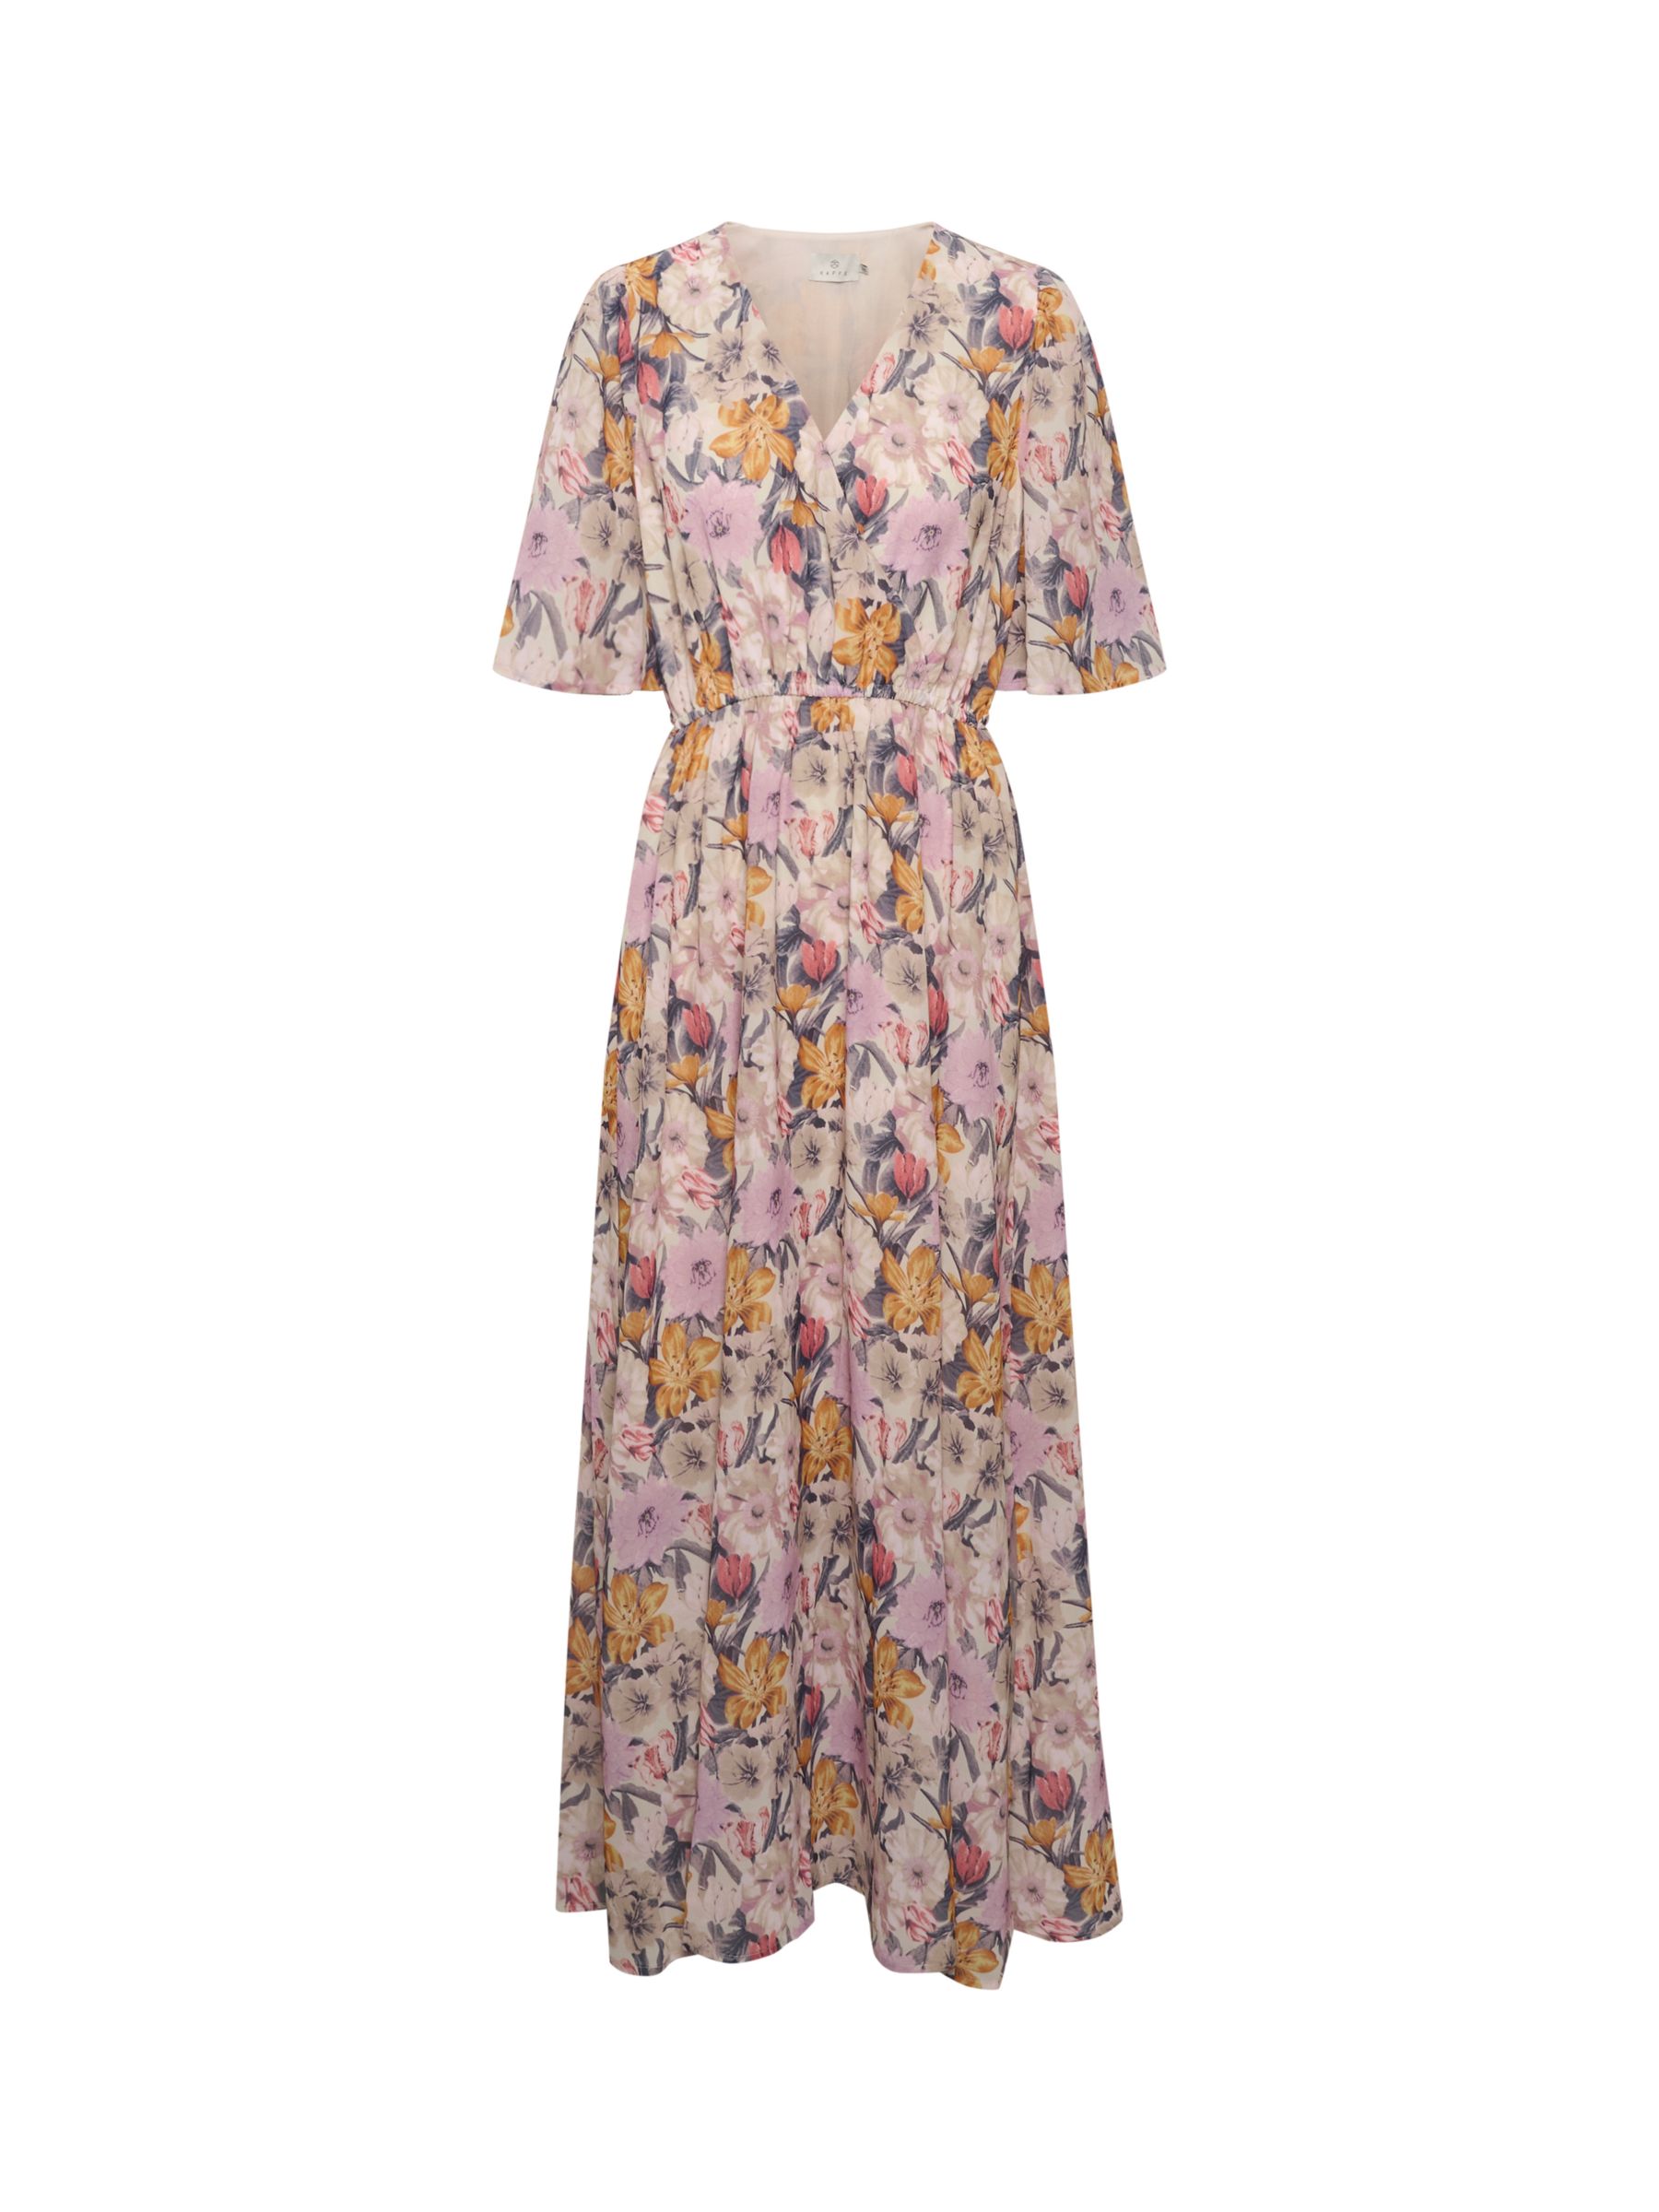 KAFFE Sorita Floral Print Short Sleeve Dress, Beige/Pink/Orange, 8